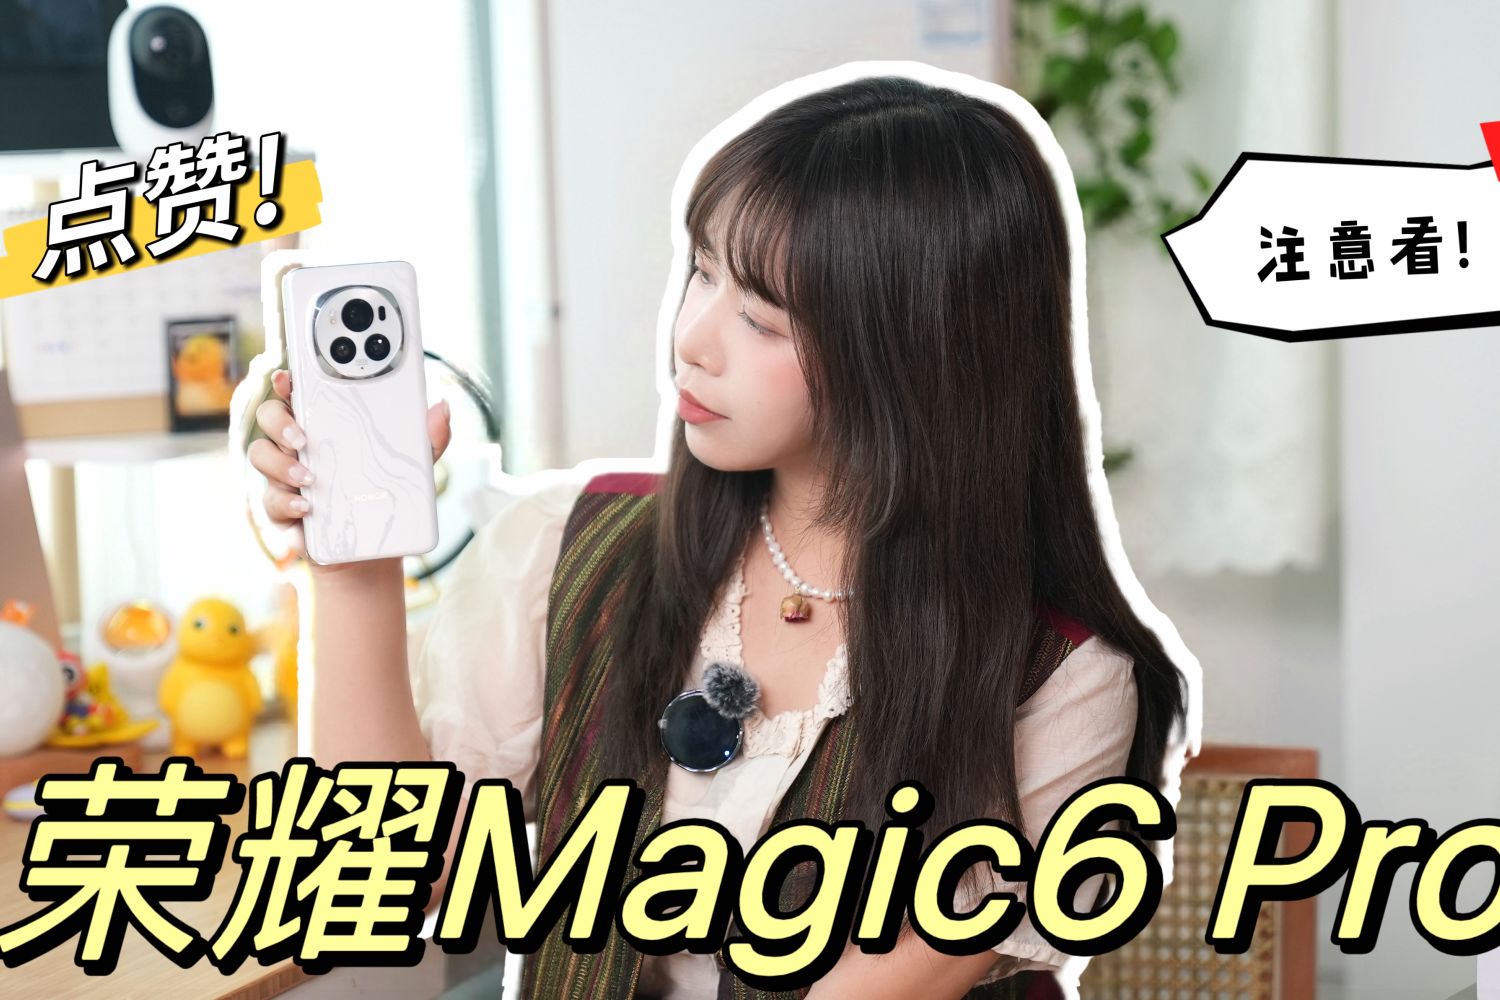 「荣耀Magic6 pro」提高生活的好助手